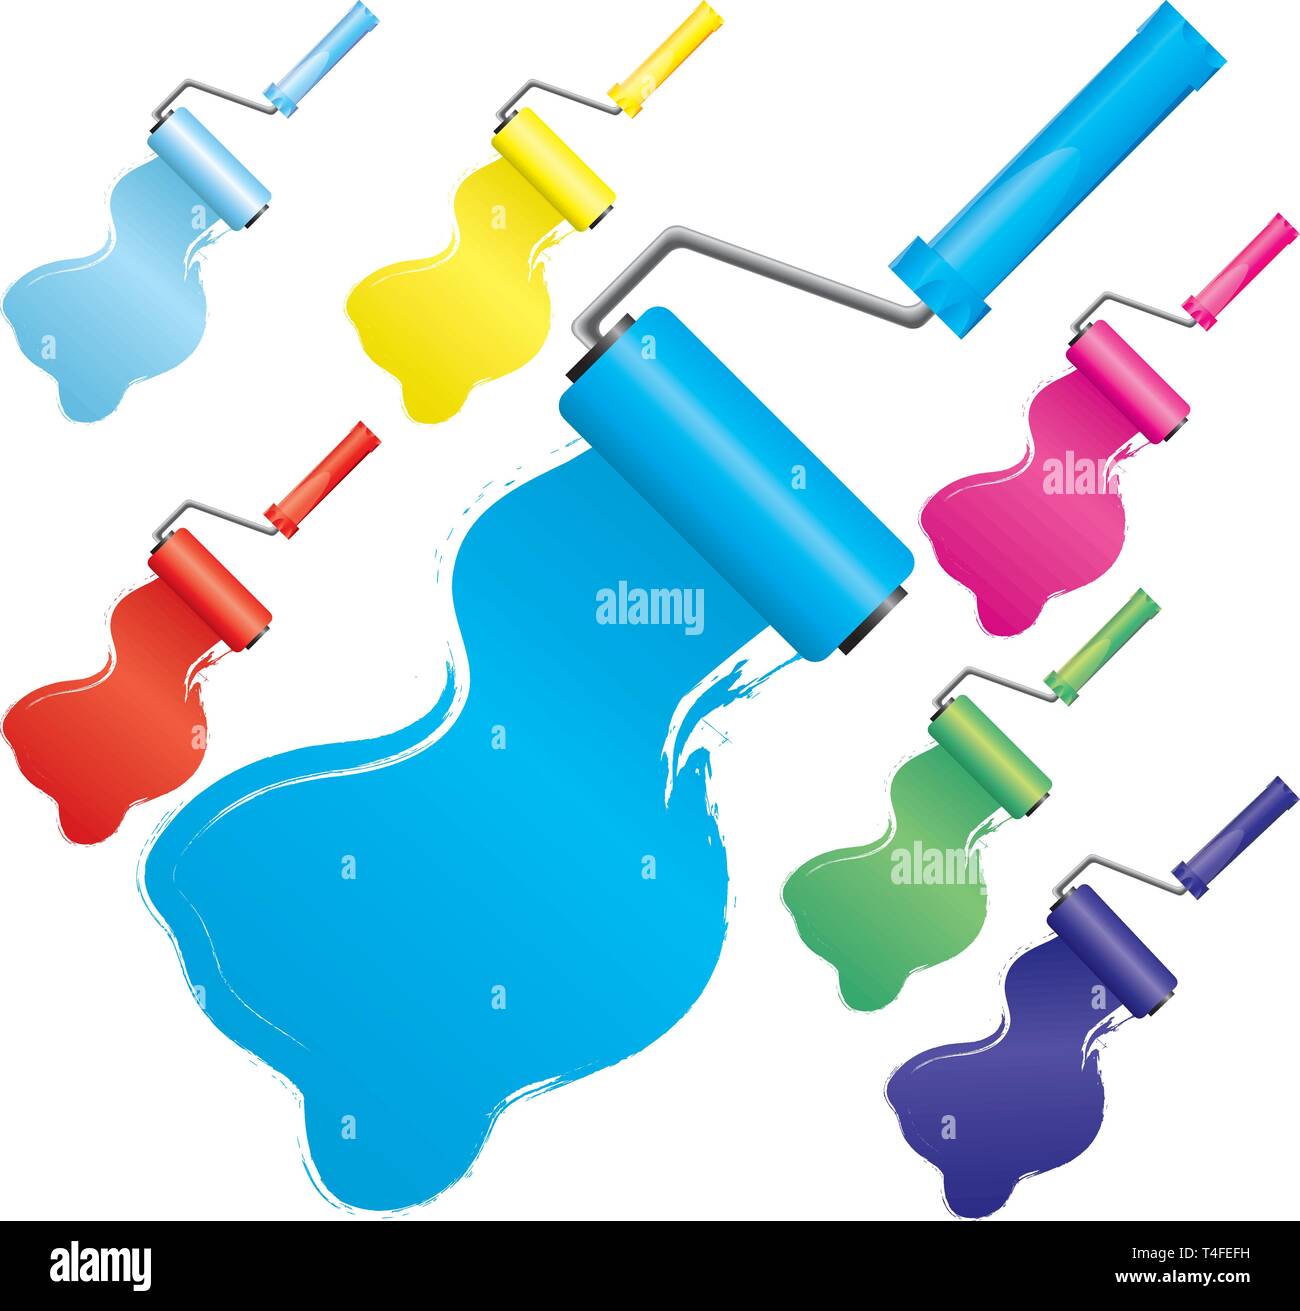 Set di vernice colorata spazzole a rullo, parte 2, illustrazione vettoriale. Include i colori:blu, azzurro, blu, giallo, rosso, rosa, verde. Illustrazione Vettoriale